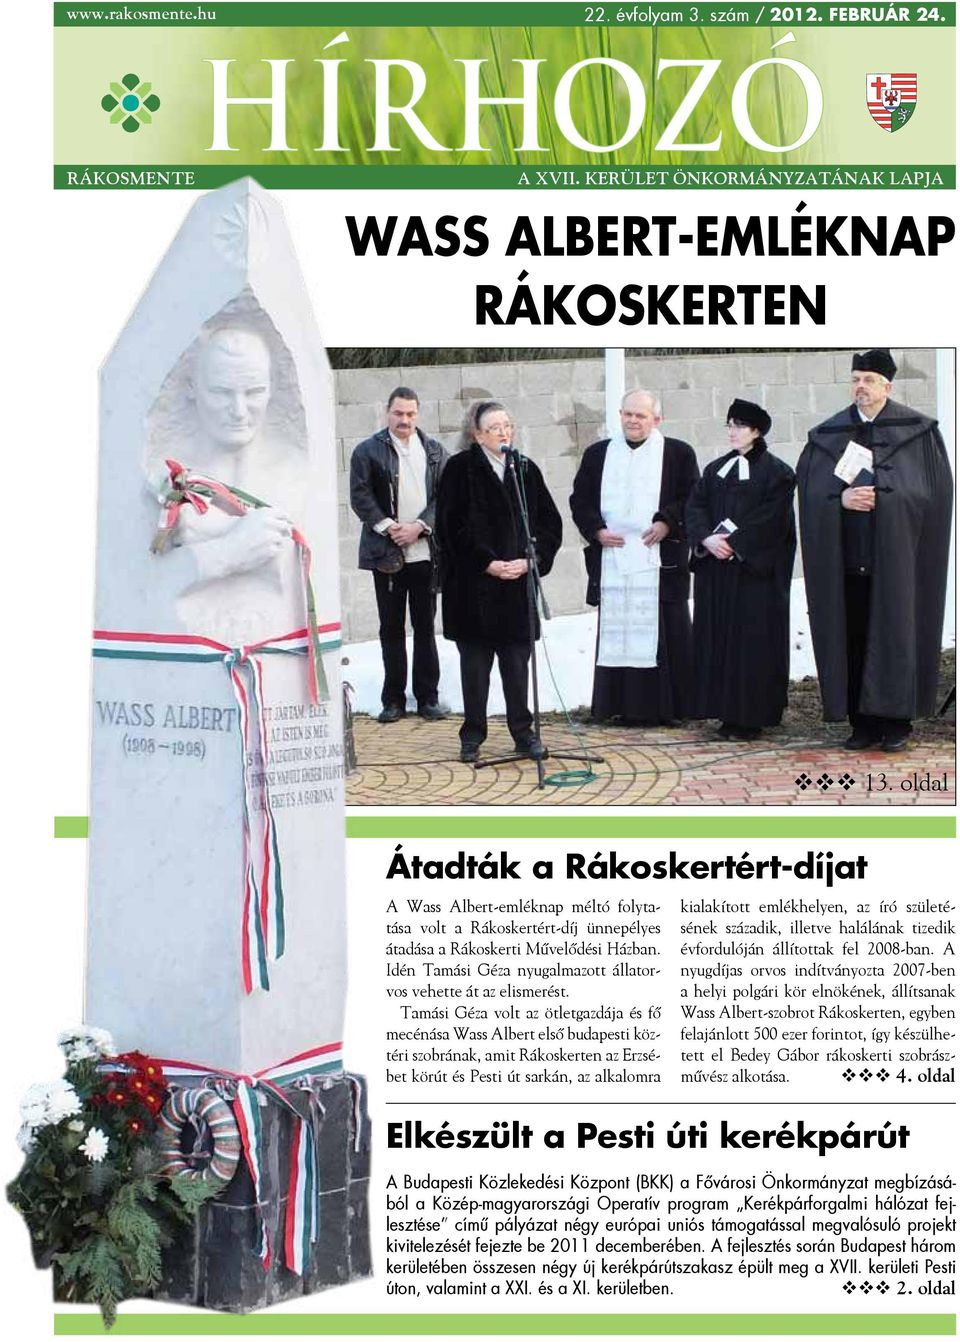 Wass Albert-emléknap Rákoskerten - PDF Ingyenes letöltés